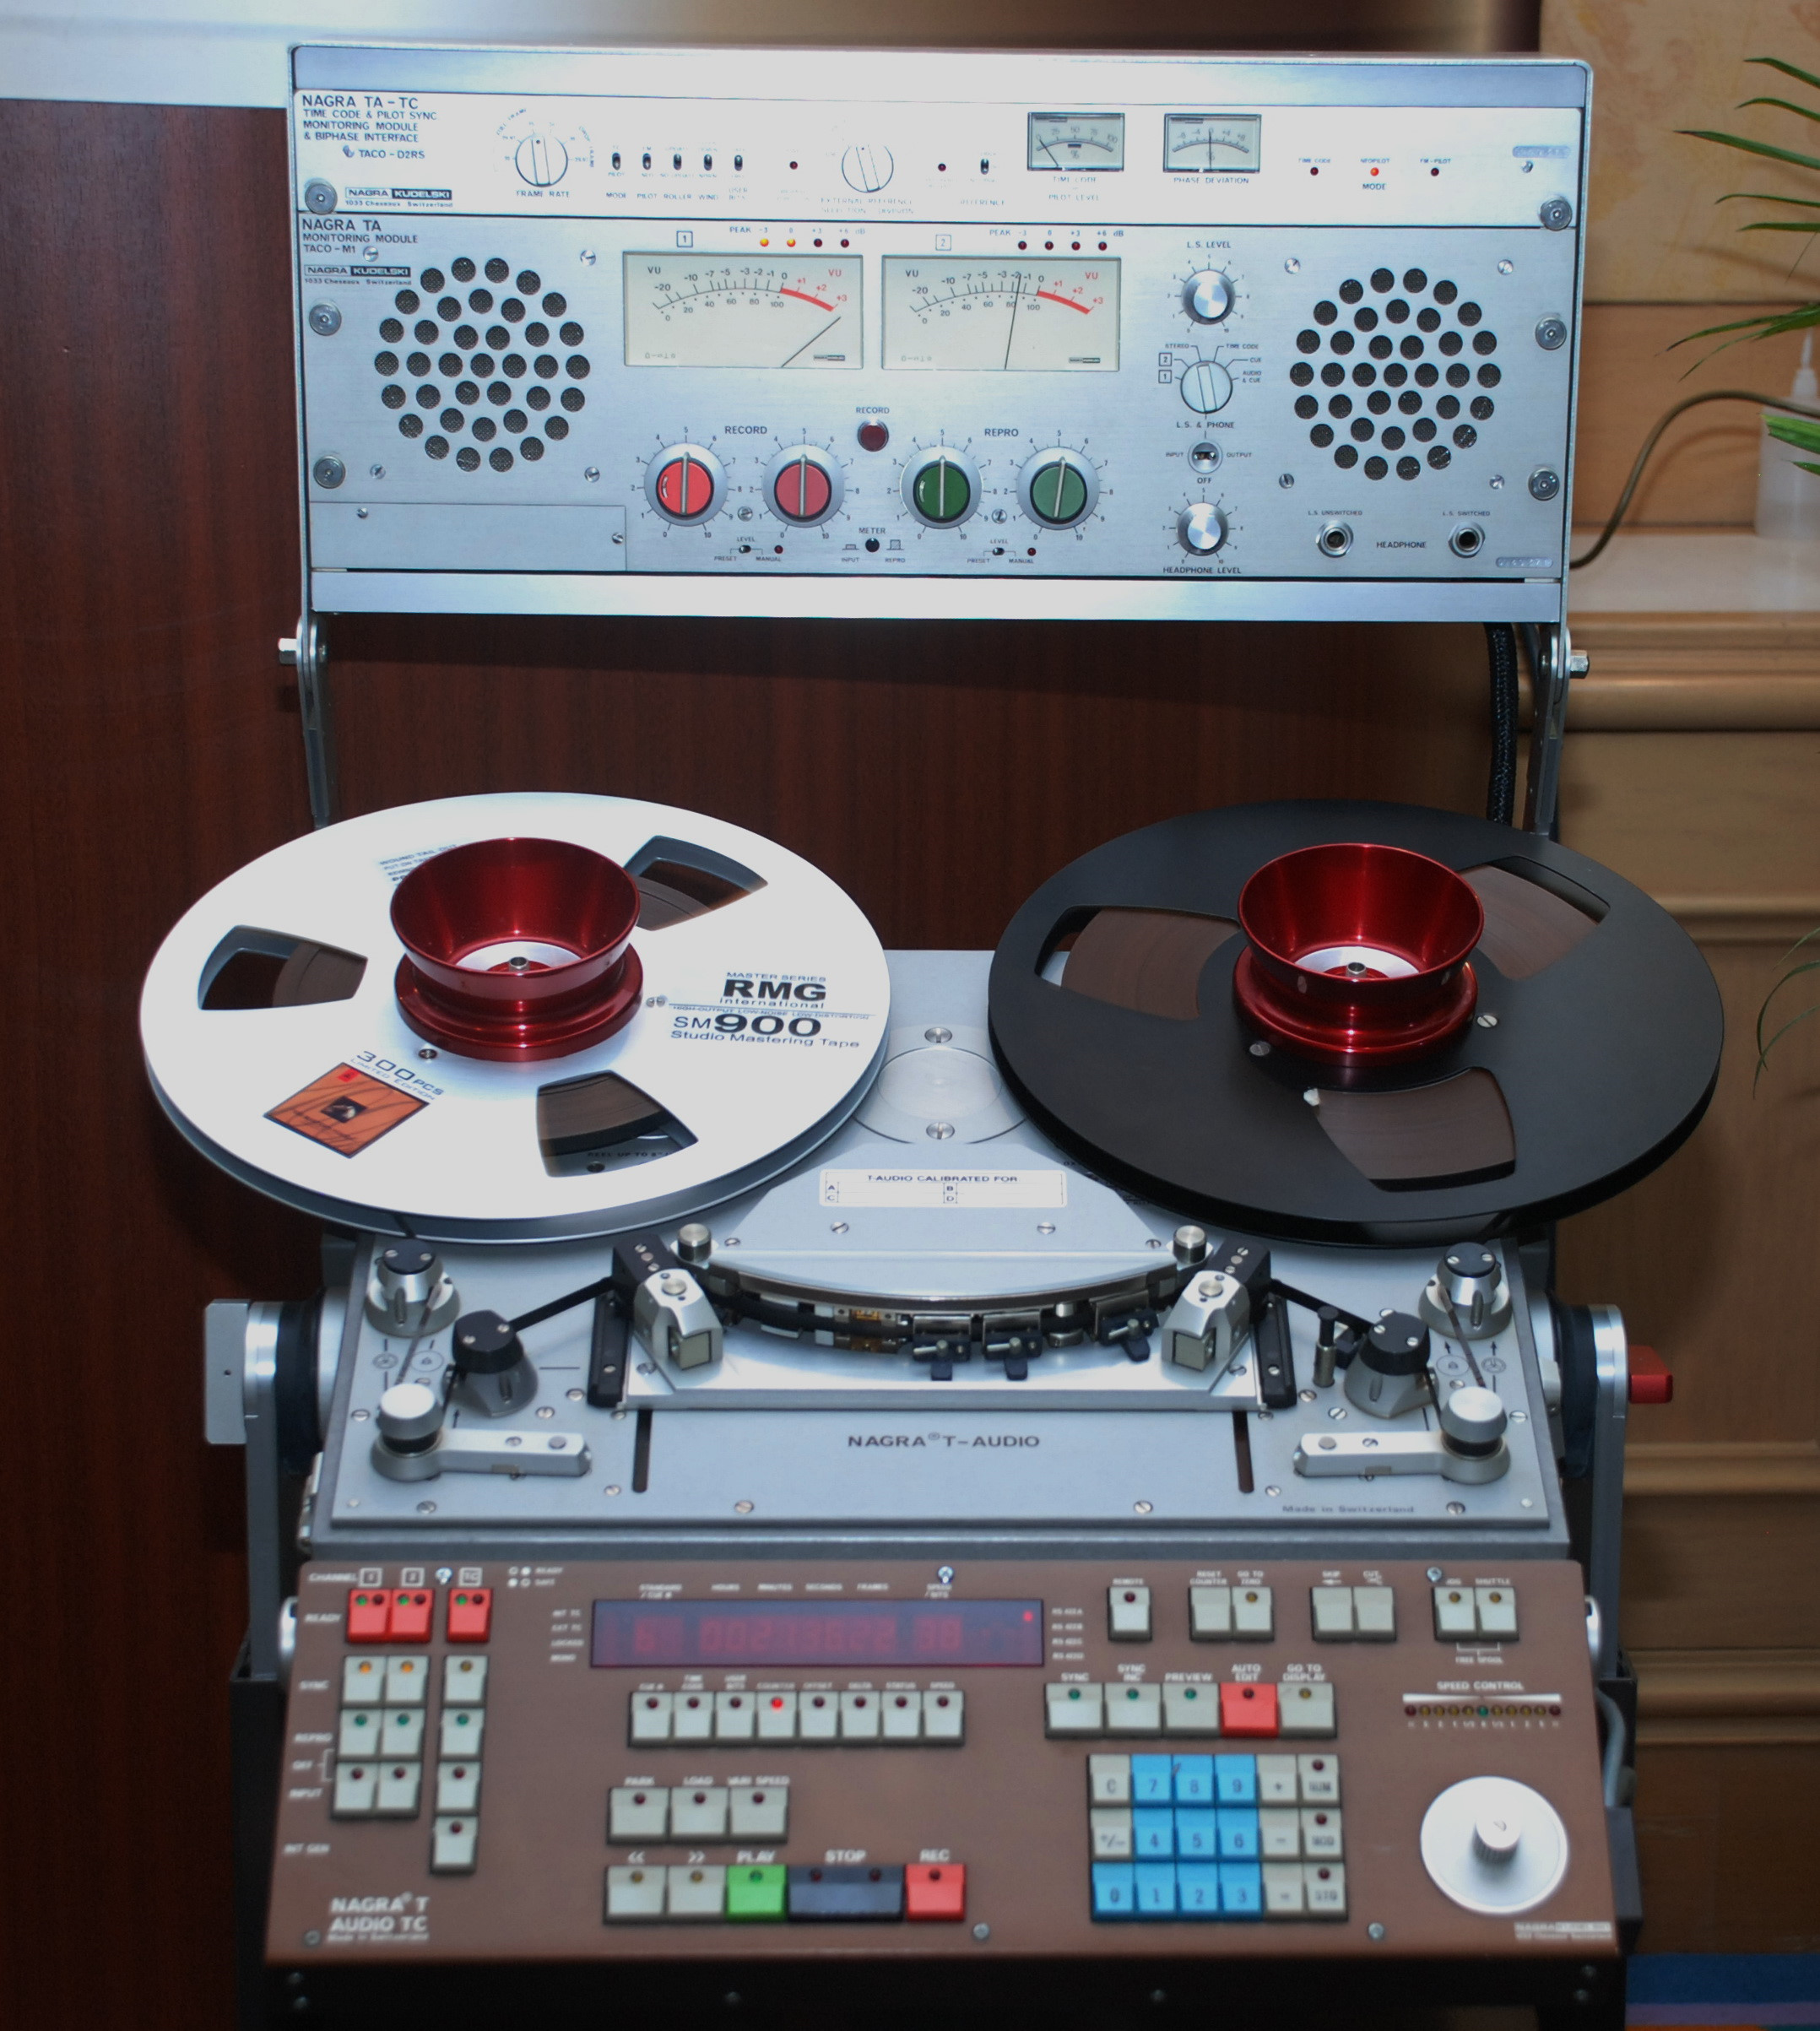 đầu băng cối Nagra T-audio được coi như báu vật của giới chơi âm thanh hi-end